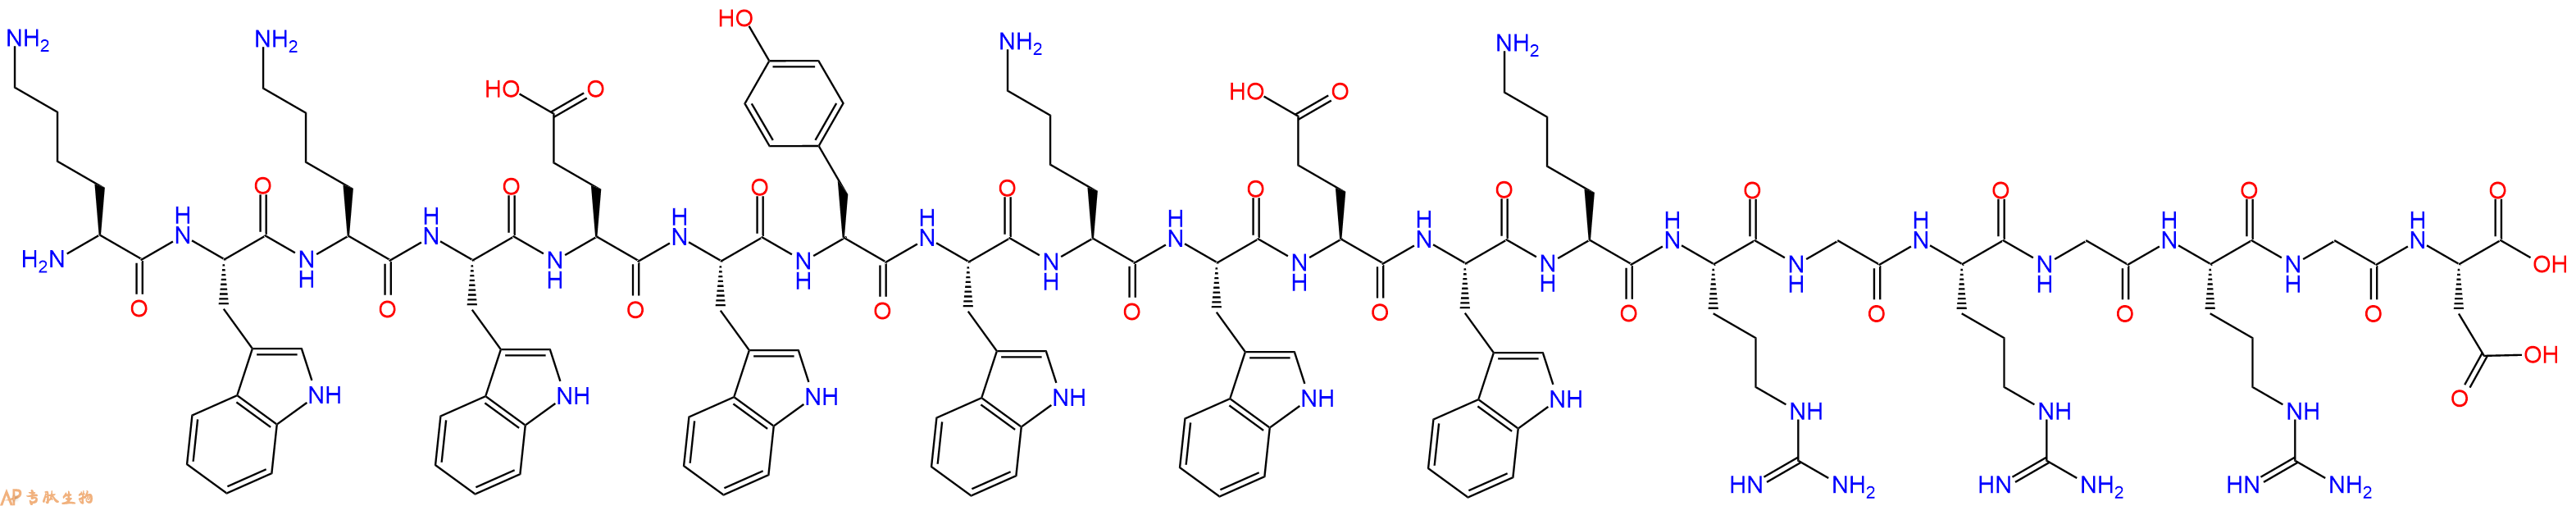 专肽生物产品具有功能亲水链段的自组装肽